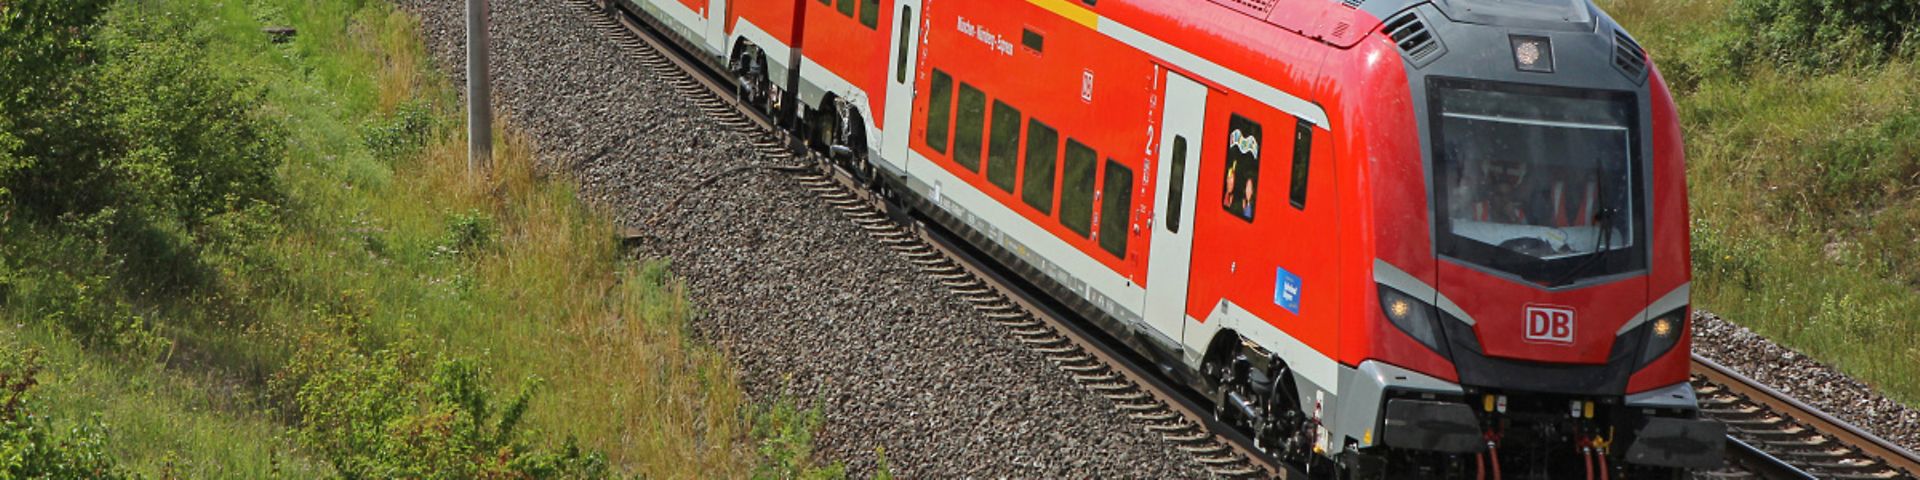 DB Regio Baureihe 102 mit Dosto (Skoda) für Nürnberg-Ingolstadt-München